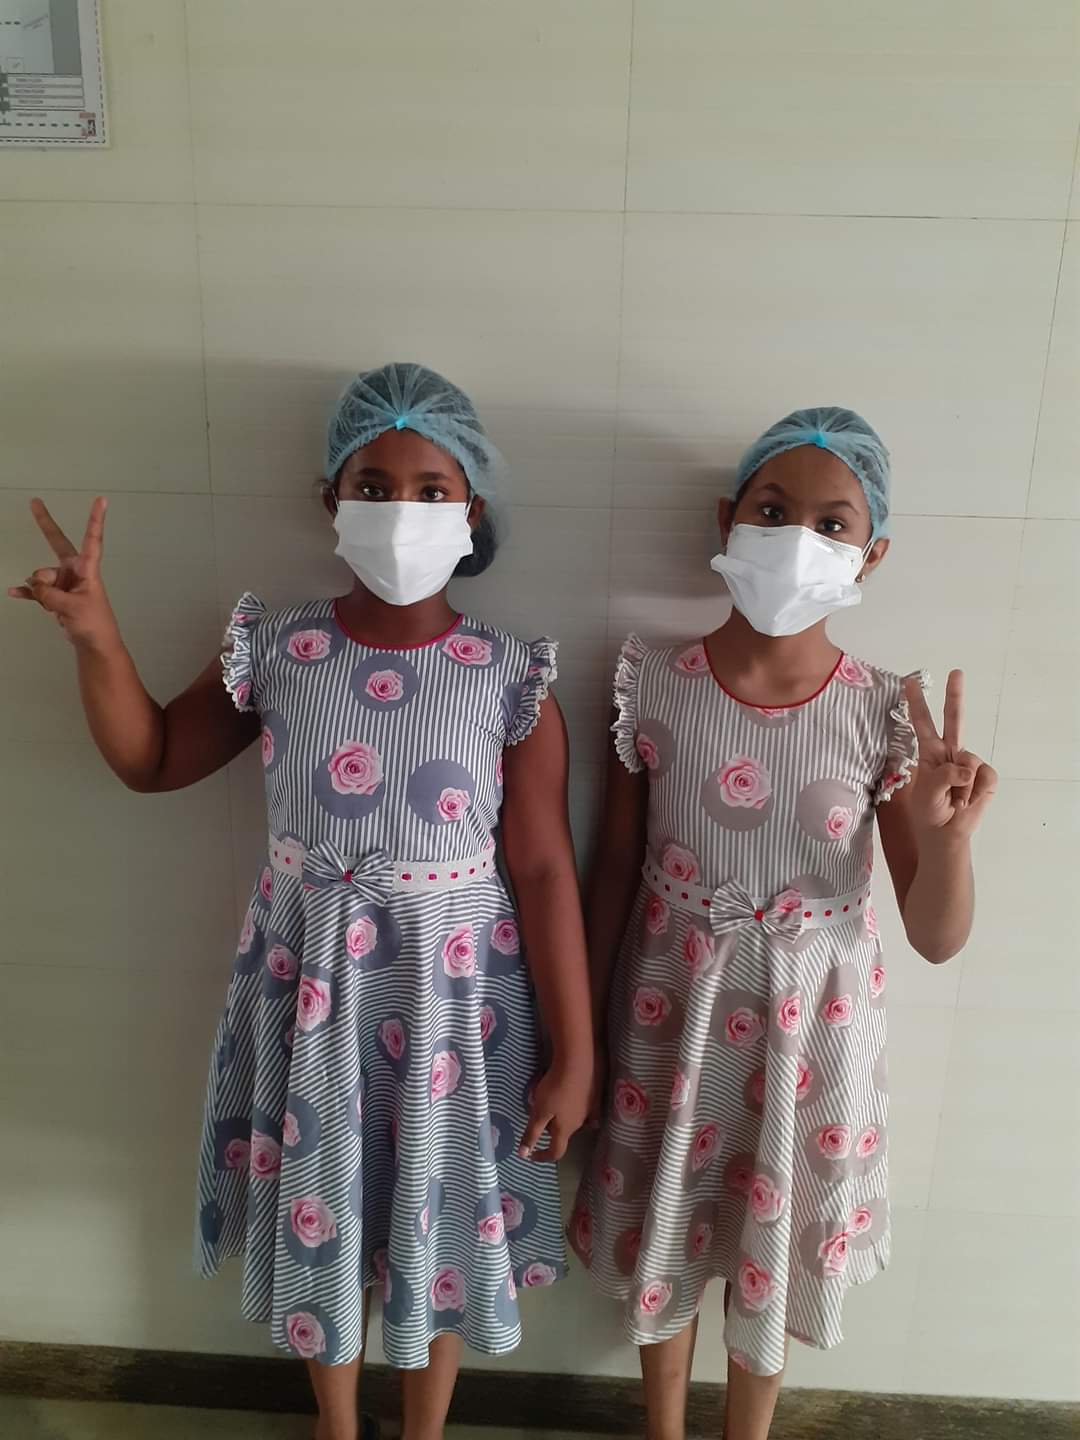 को-वैक्सीन ट्रायल का हिस्सा बनीं जुड़वा बहनें